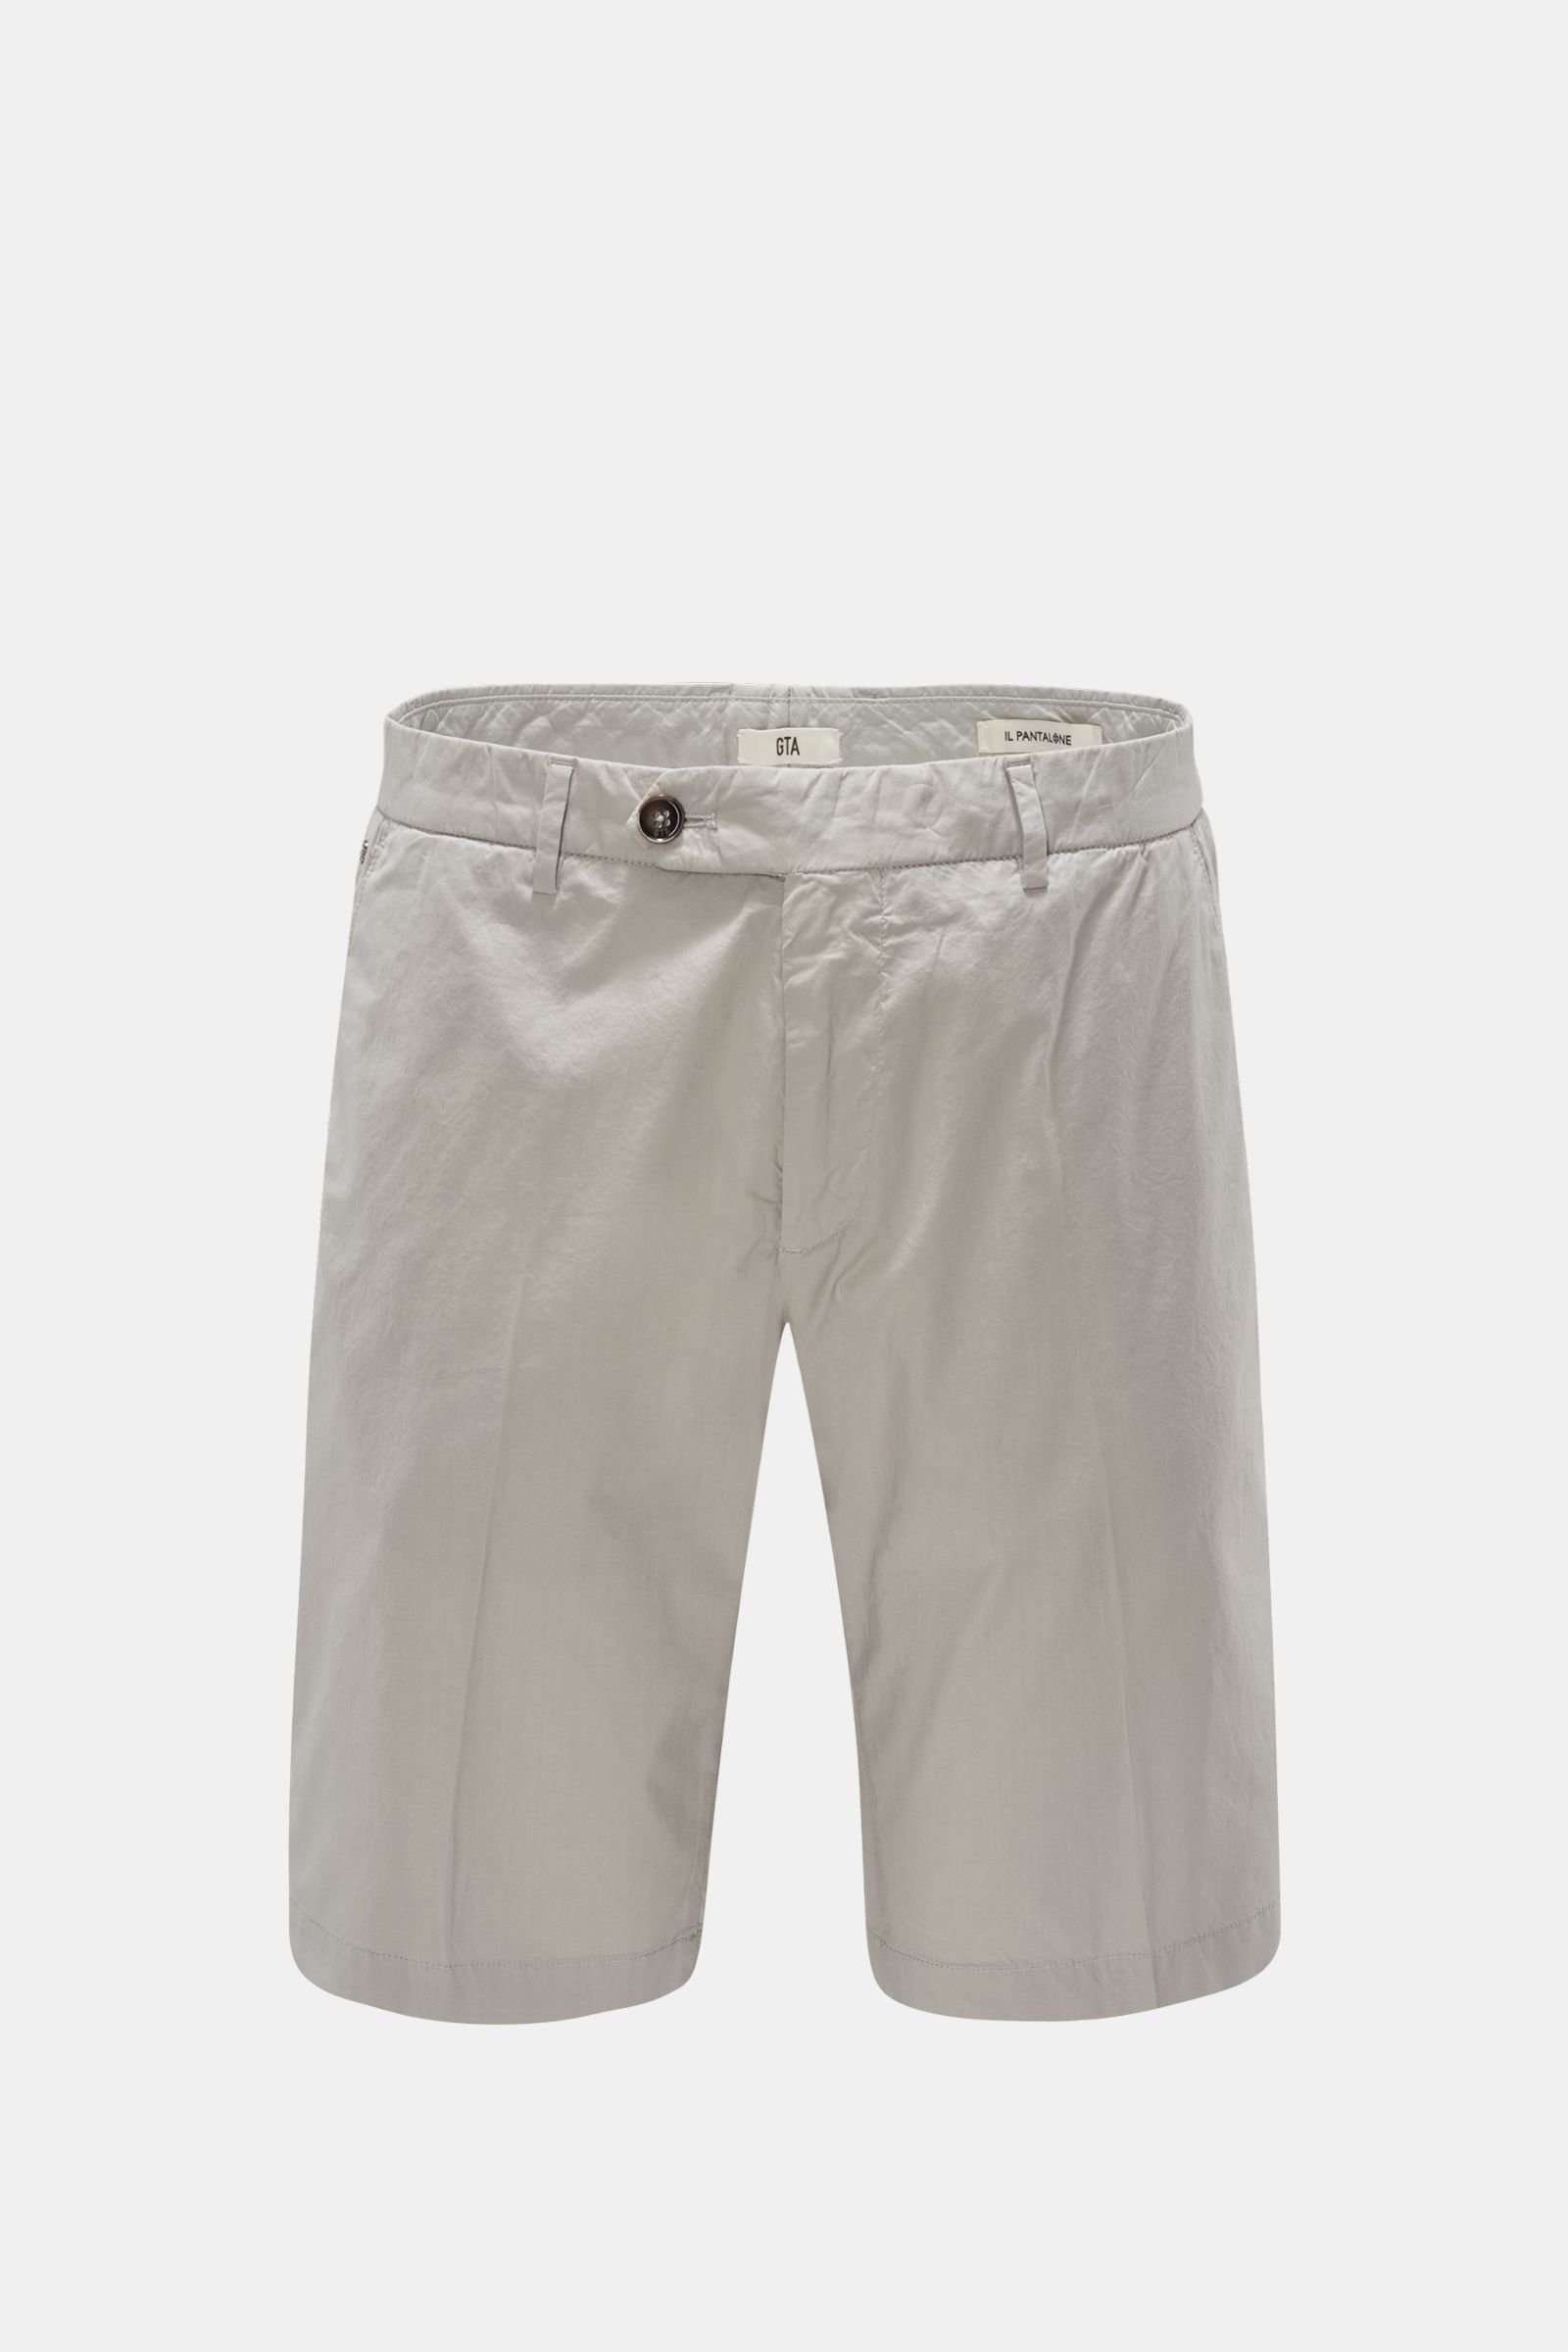 Bermuda shorts 'Nikko Short' light grey